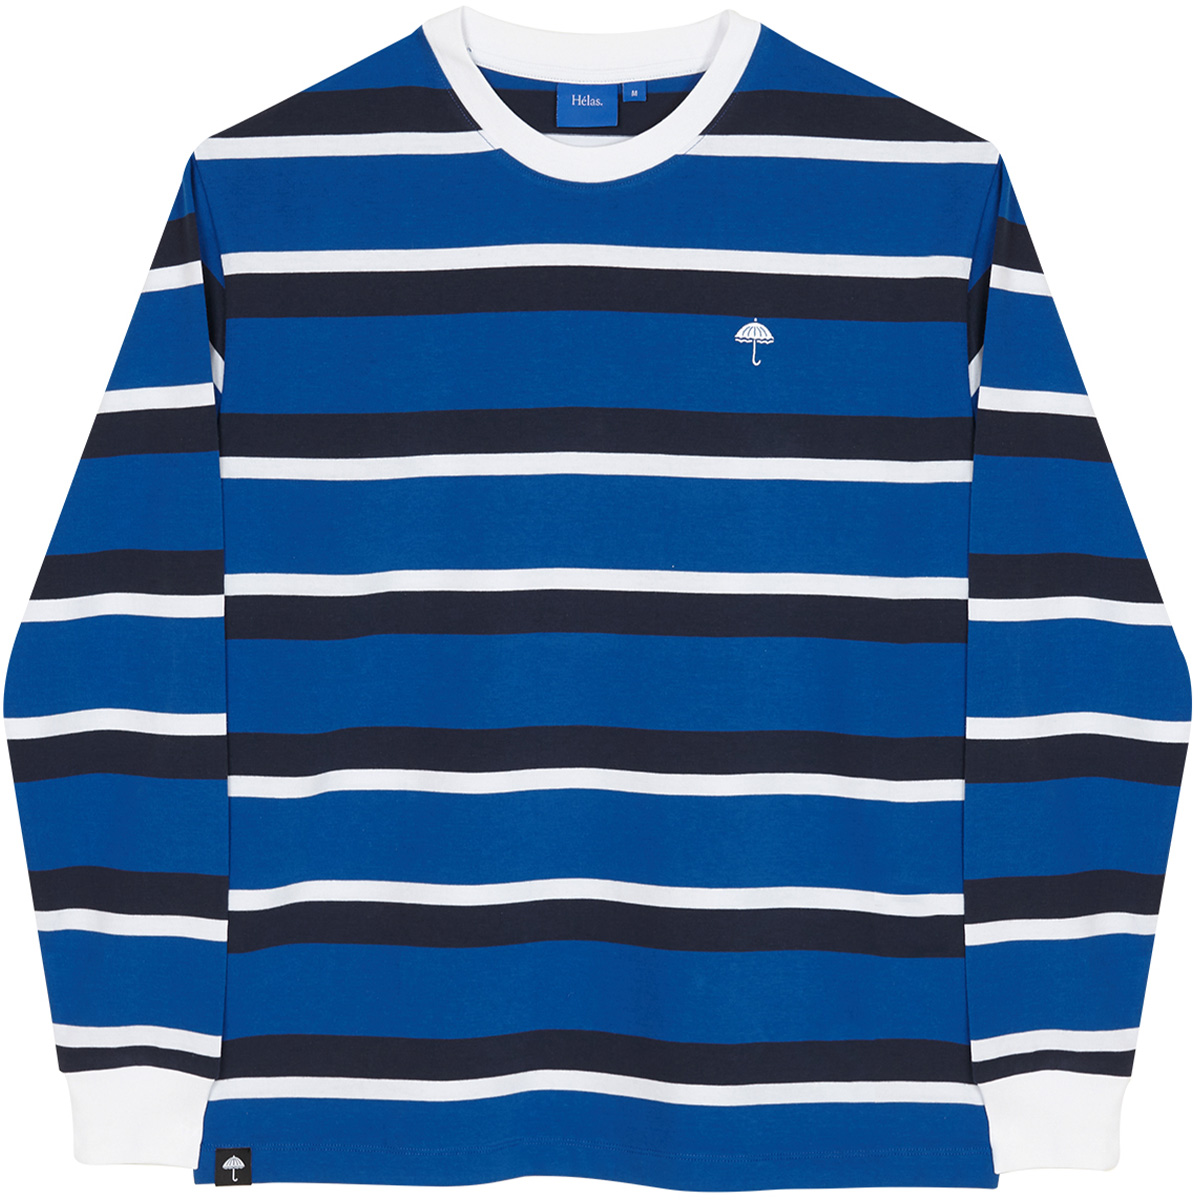 Helas Horizon Longsleeve T-Shirt Blue